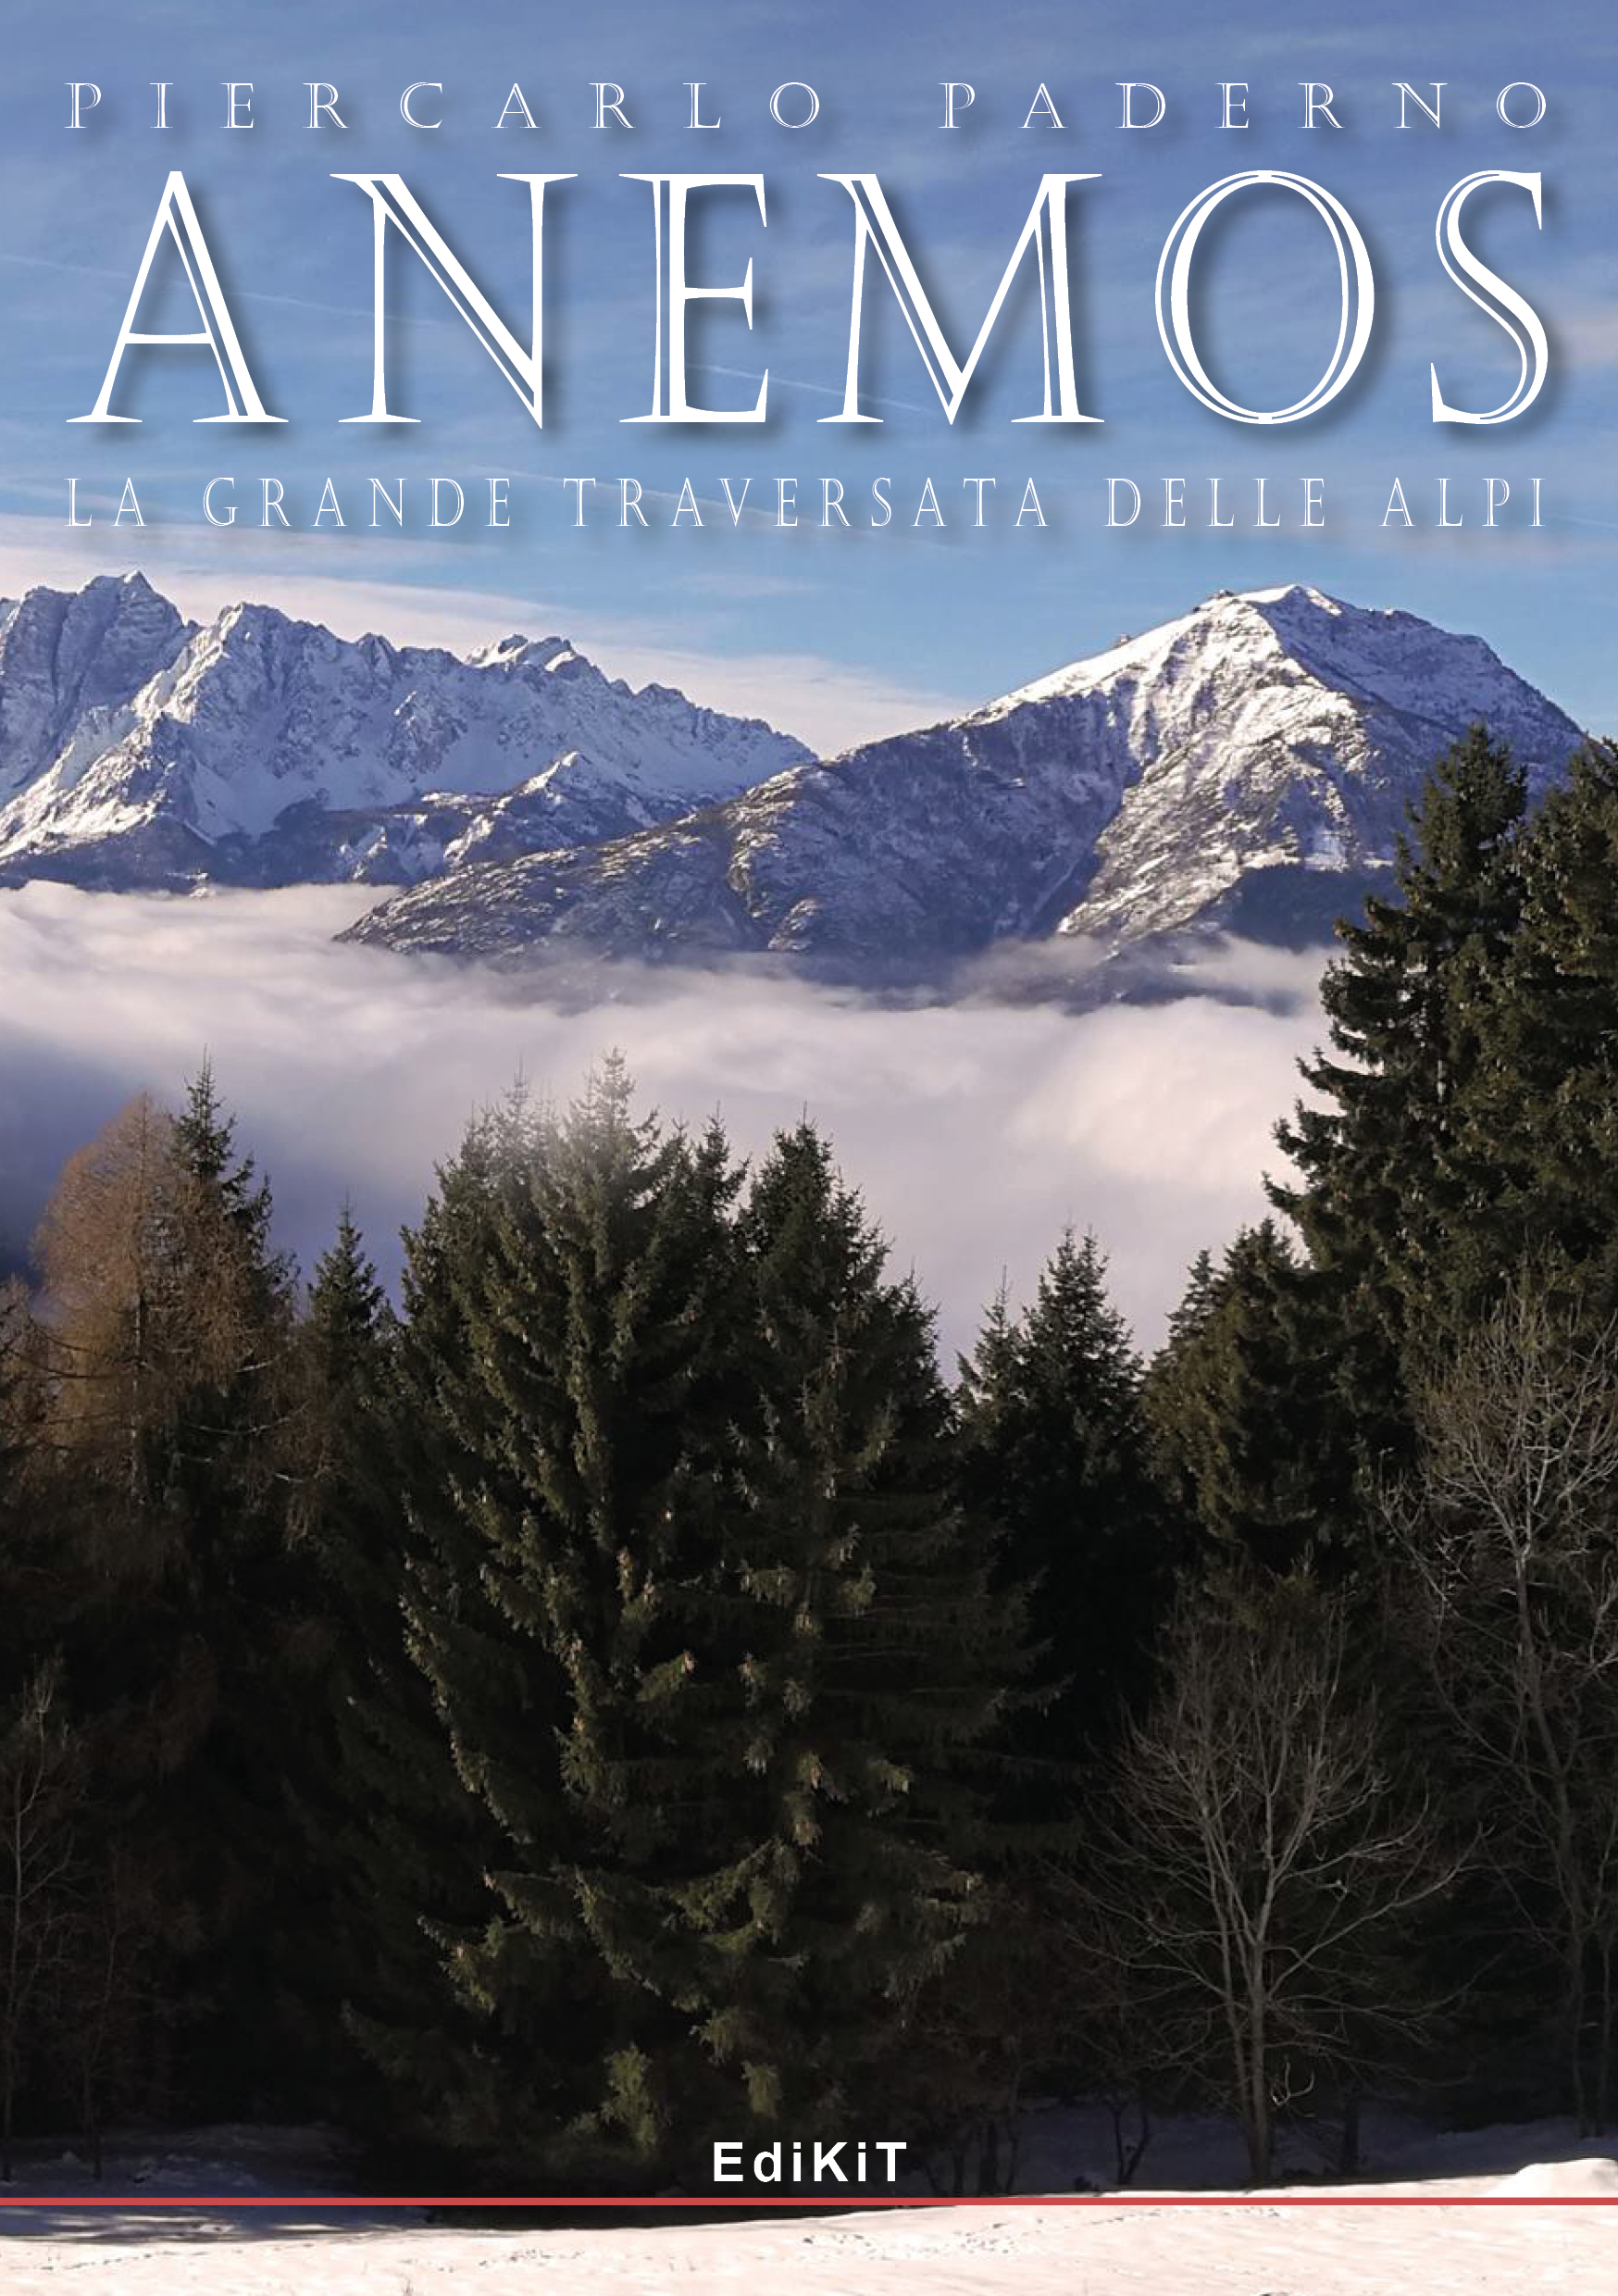 Lo scrittore Piercarlo Paderno esce con “ANEMOS – La grande traversata delle Alpi”, Edizioni EdiKiT